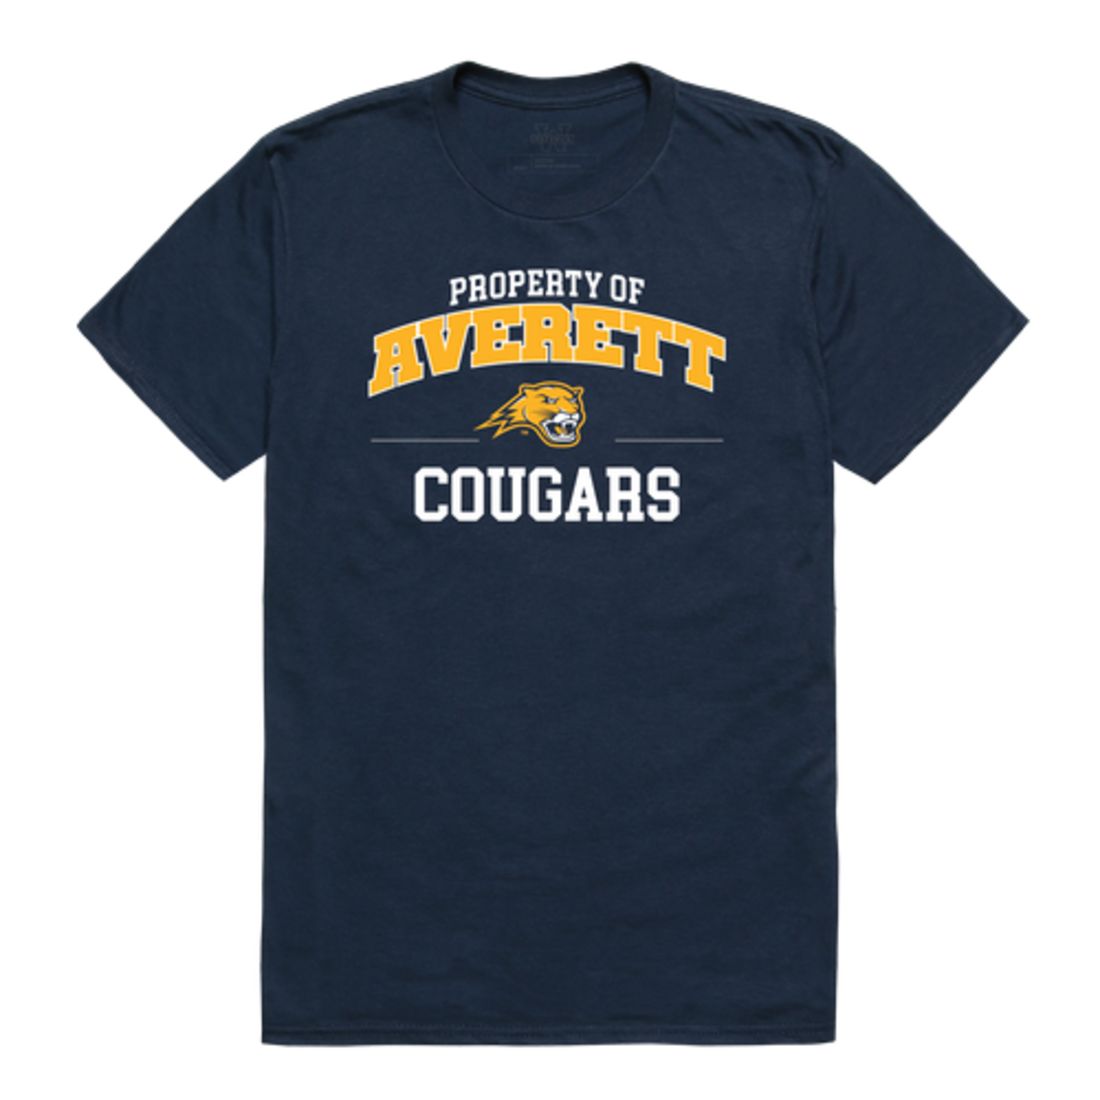 Averett University Averett Cougars Property T-Shirt Tee